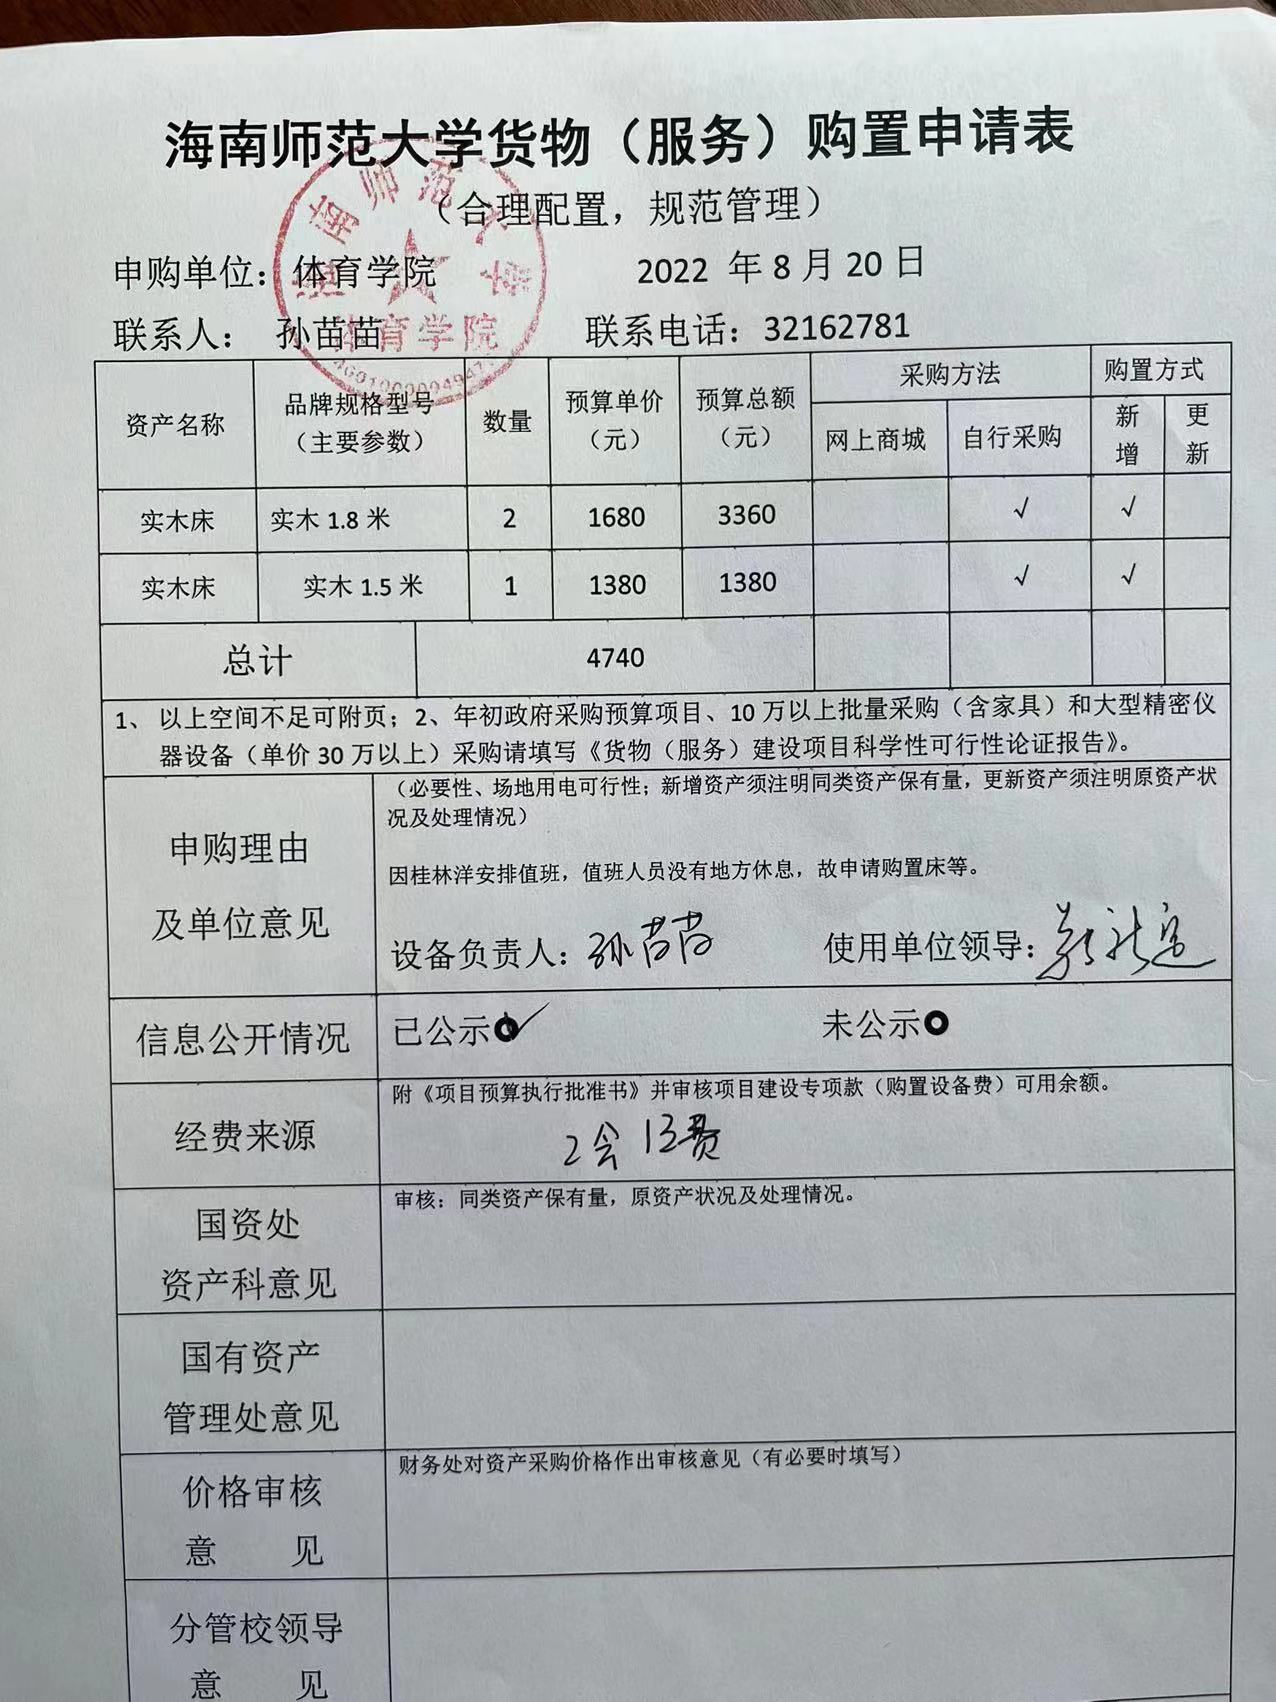 海南师范大学货物（服务）购置申请表8.20